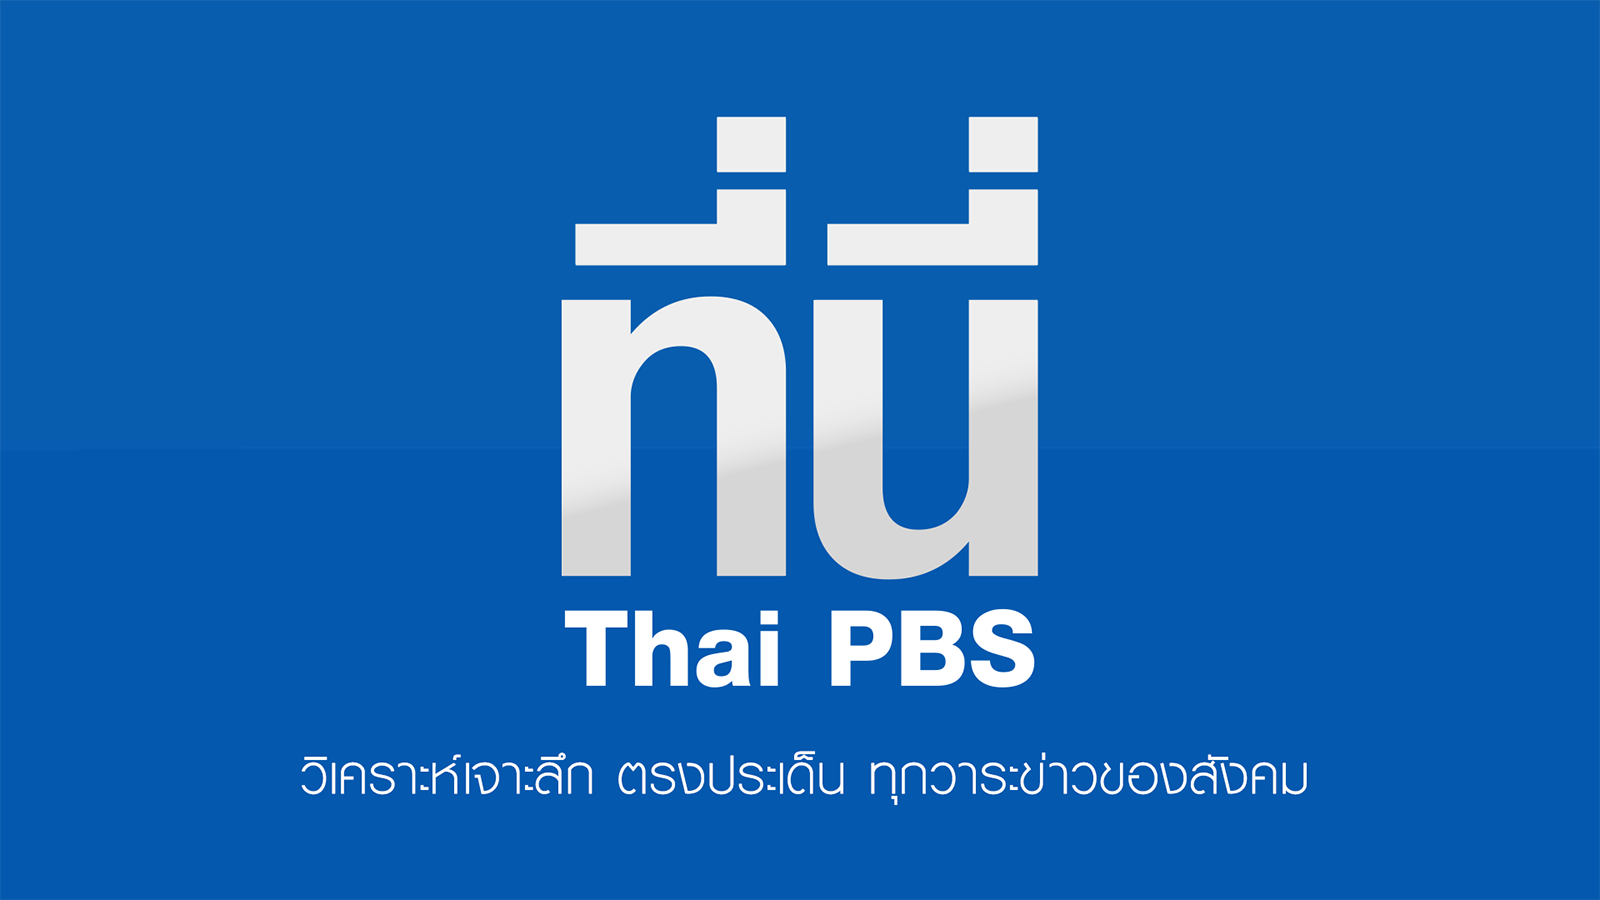 ที่นี่ Thai PBS